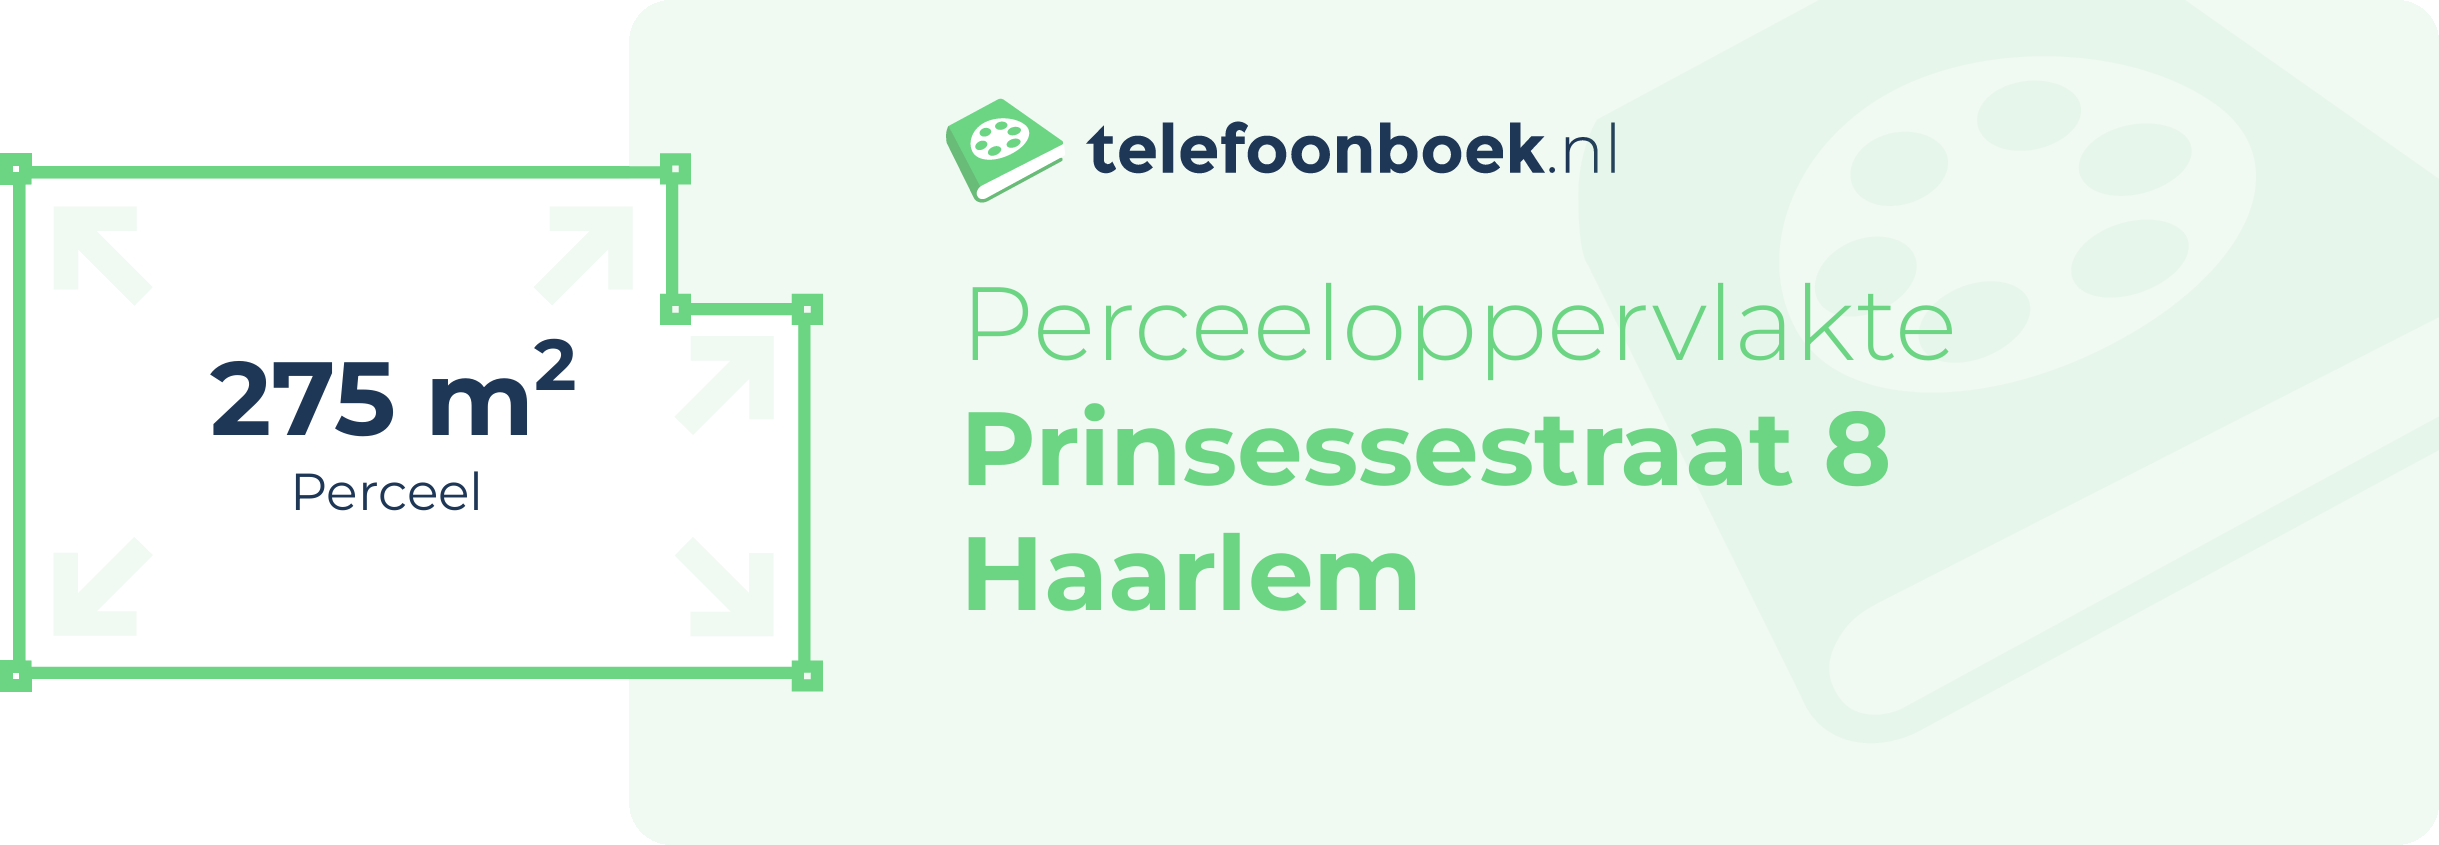 Perceeloppervlakte Prinsessestraat 8 Haarlem